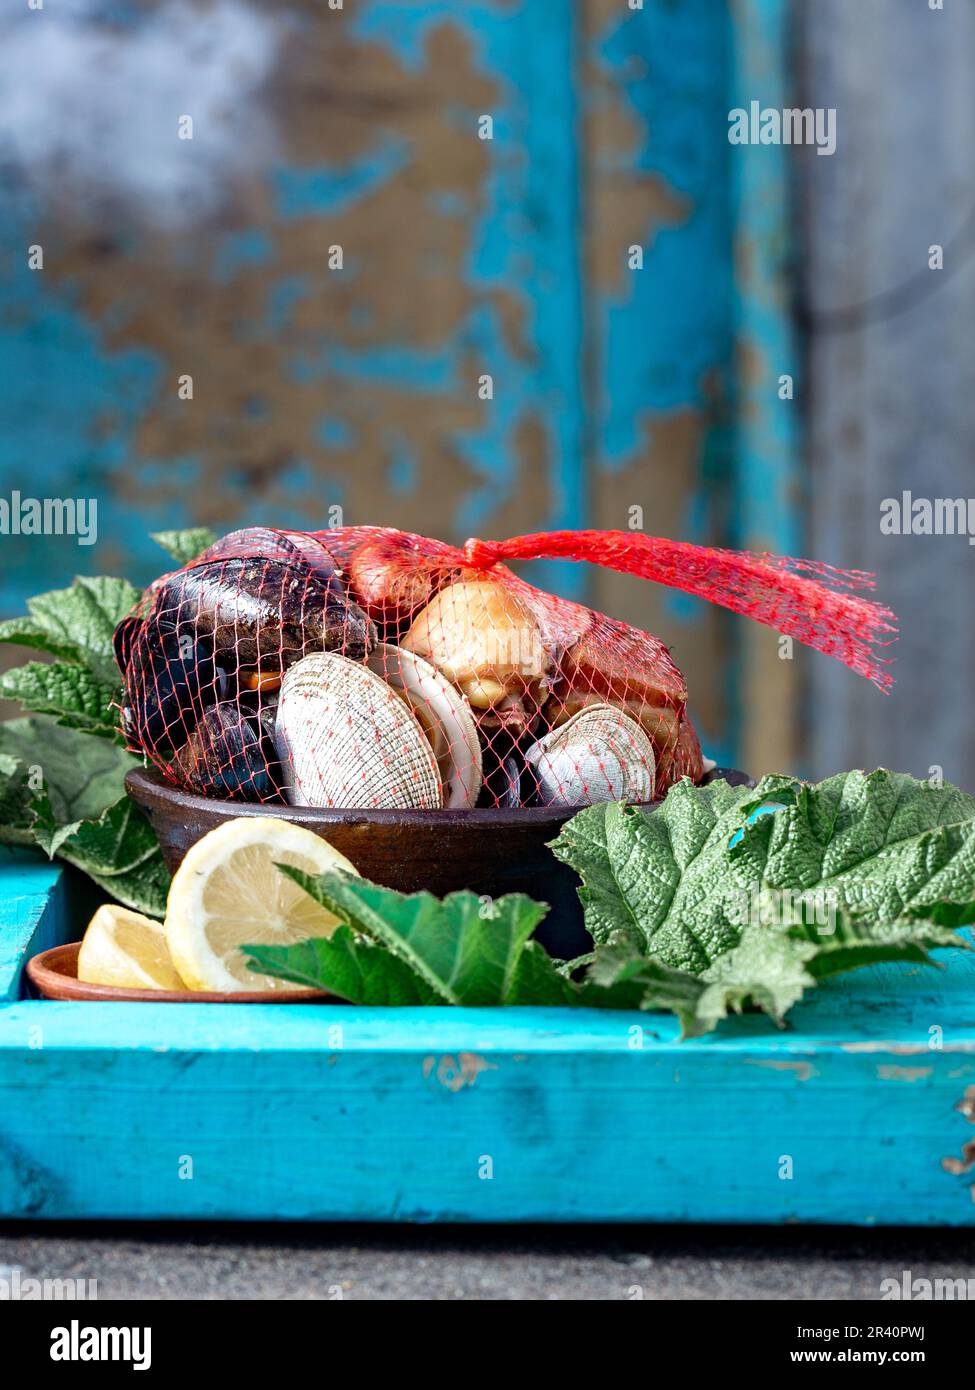 Berühmtes traditionelles Gericht im Süden Chiles und der Chiloe-Inselgruppe - Curanto al Hoyo, Kuranto. Verschiedene Meeresfrüchte, Fleisch A. Stockfoto